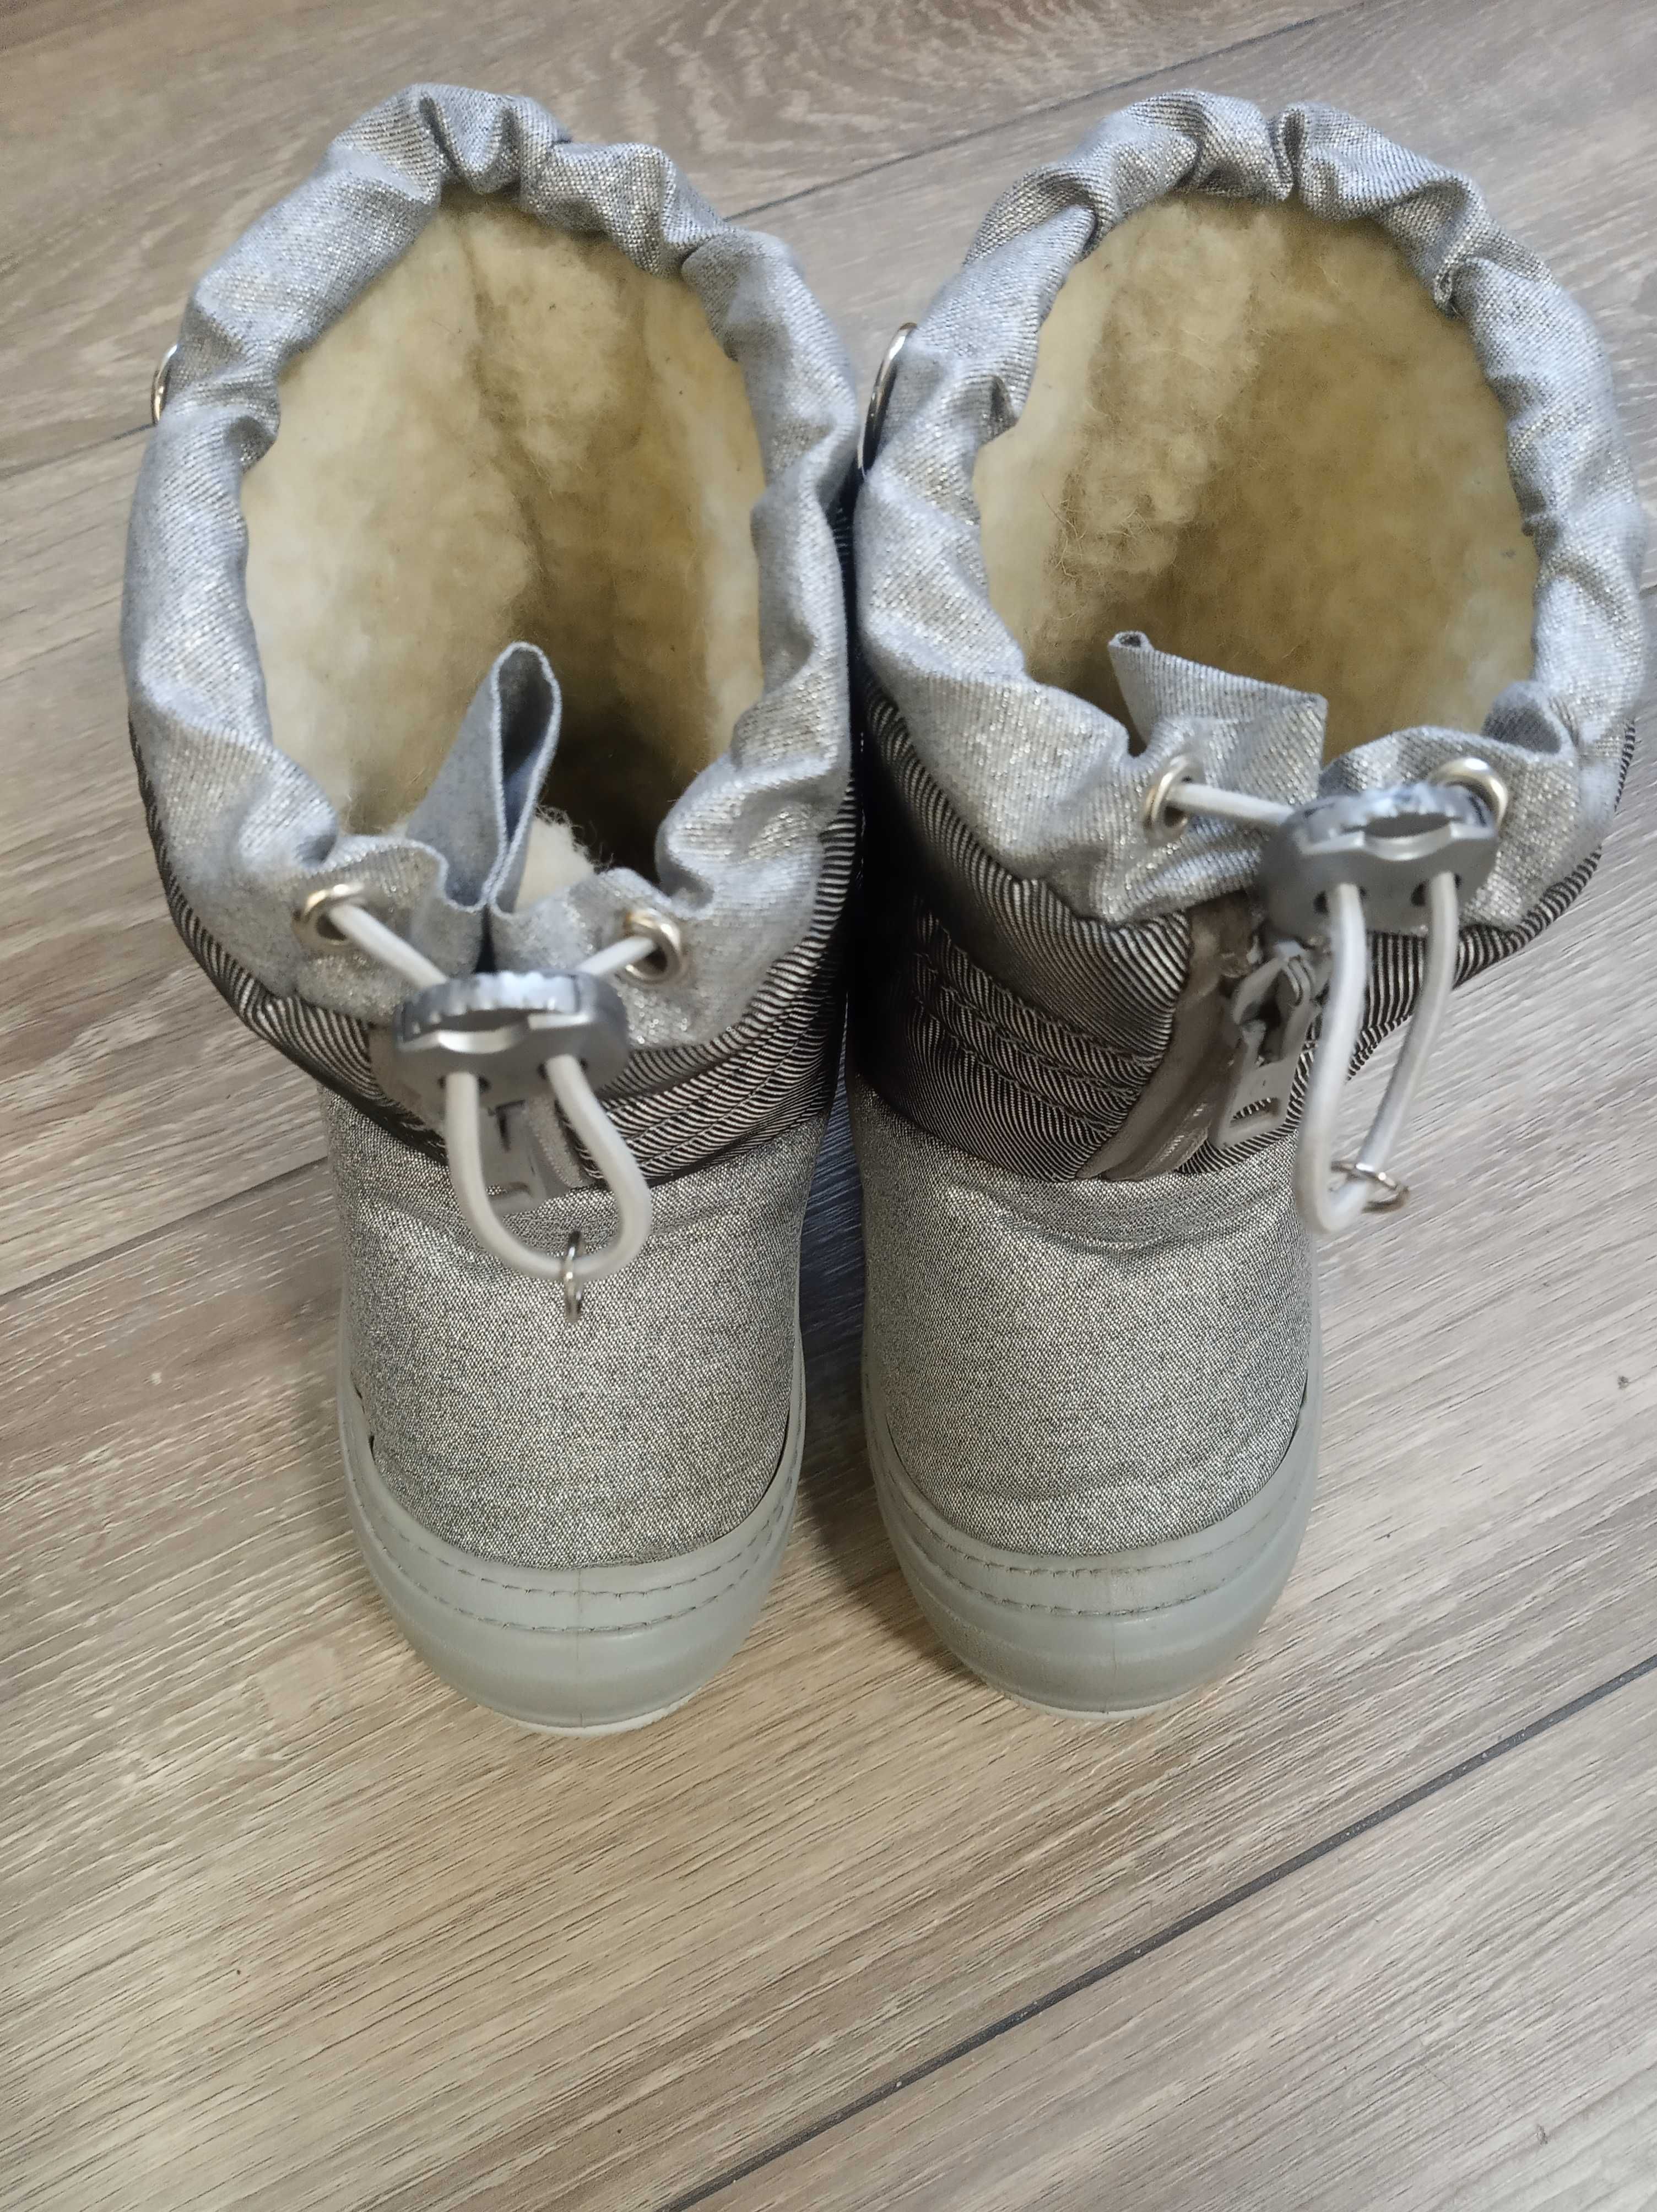 Зимние сапожки дутики Demar 24-25 рр, 16.5 см. Зимові чоботи дутікі